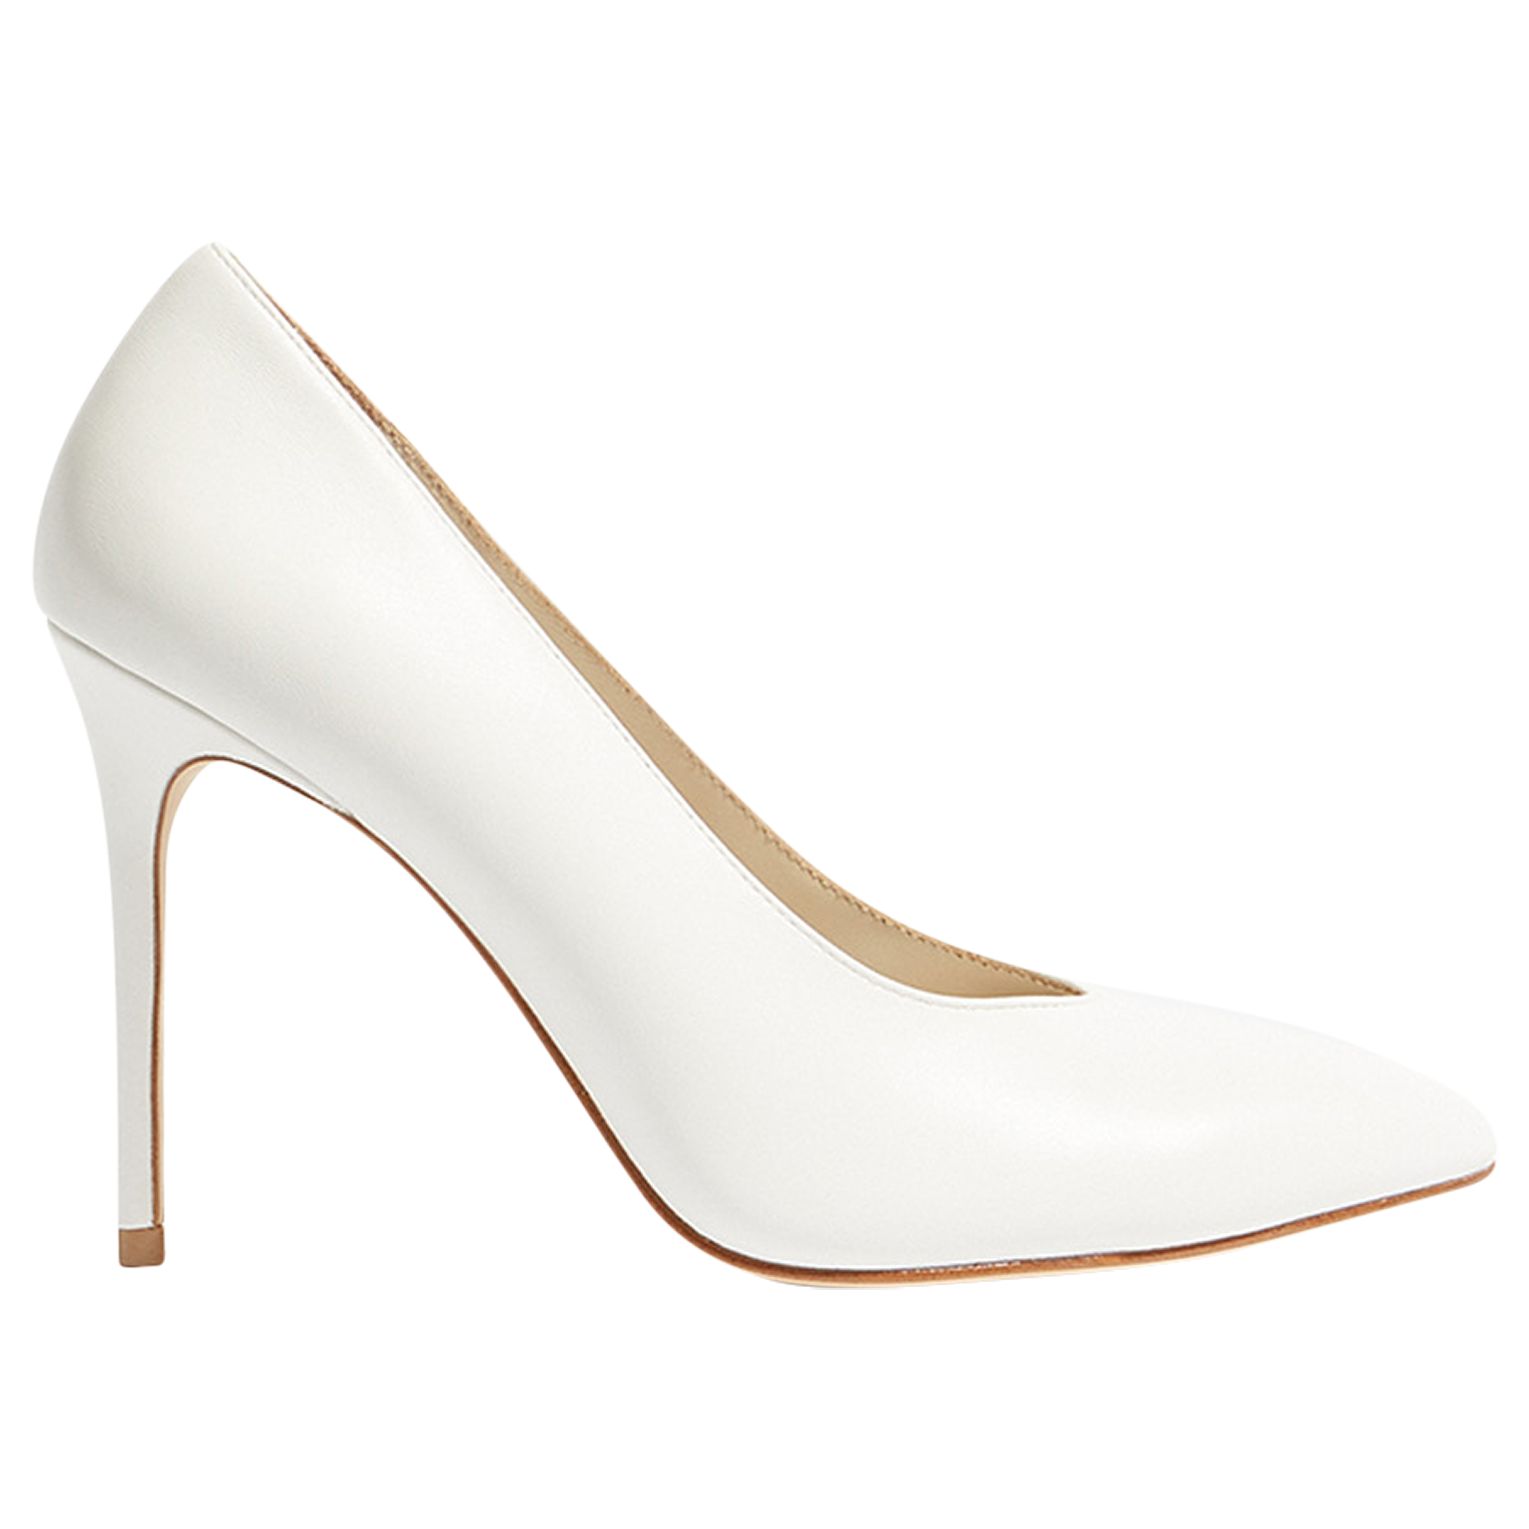 Karen Millen Stiletto Court Shoes, White